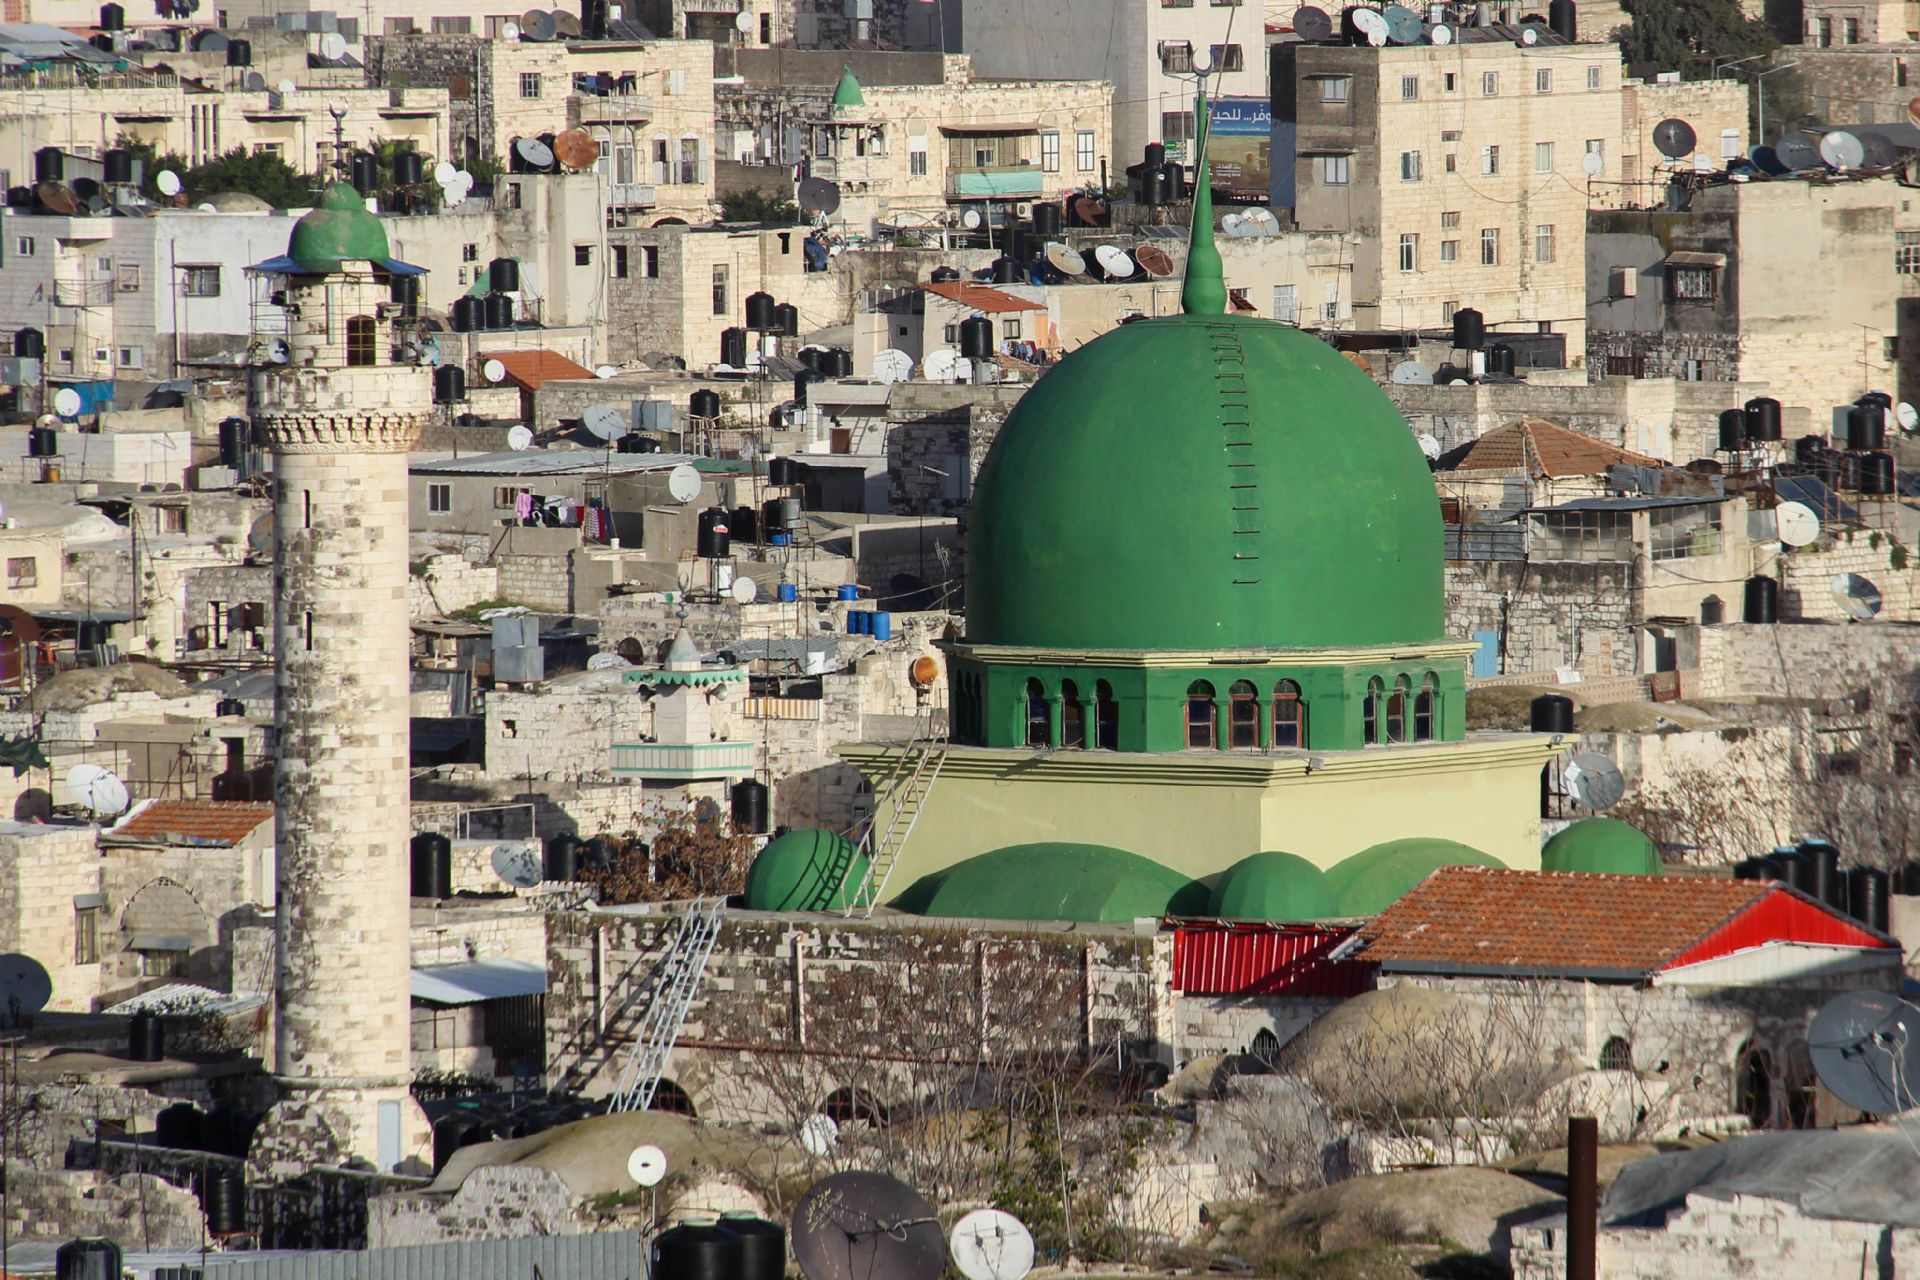 مسجد النصر